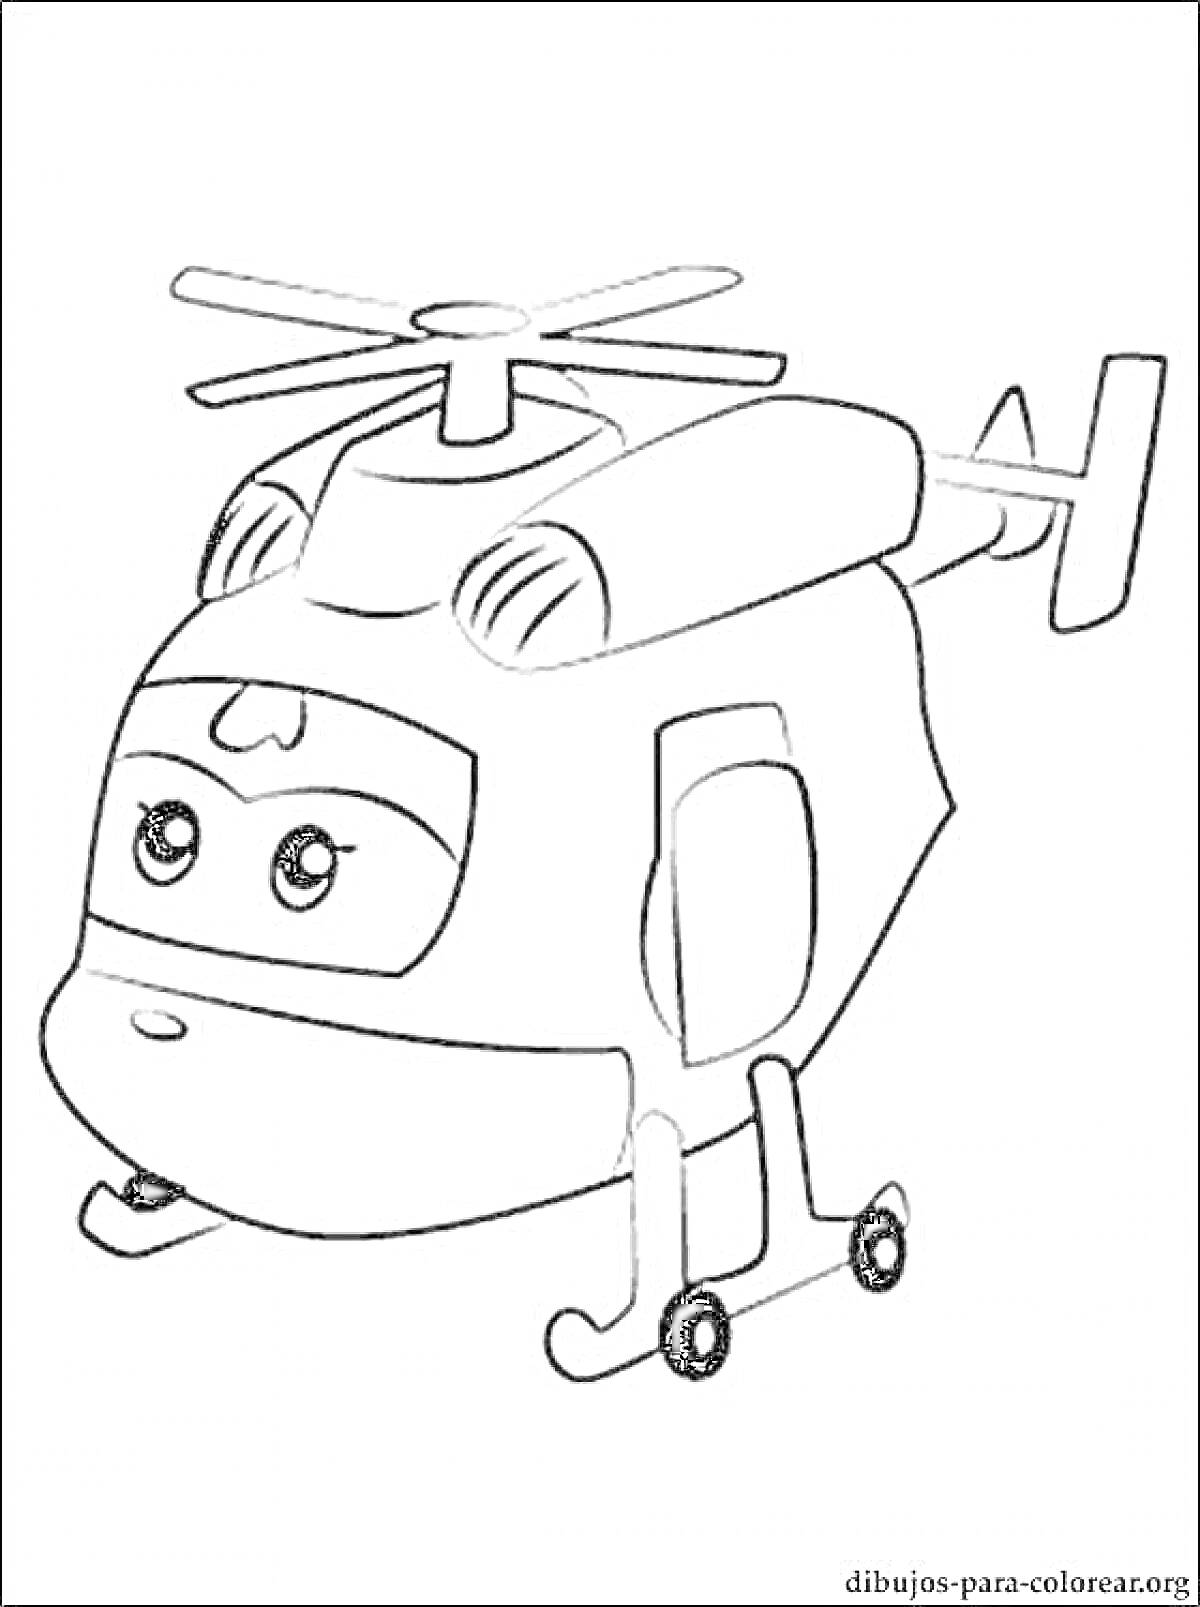 Раскраска мультипликационный вертолёт Дизи с улыбающимся лицом и винтами